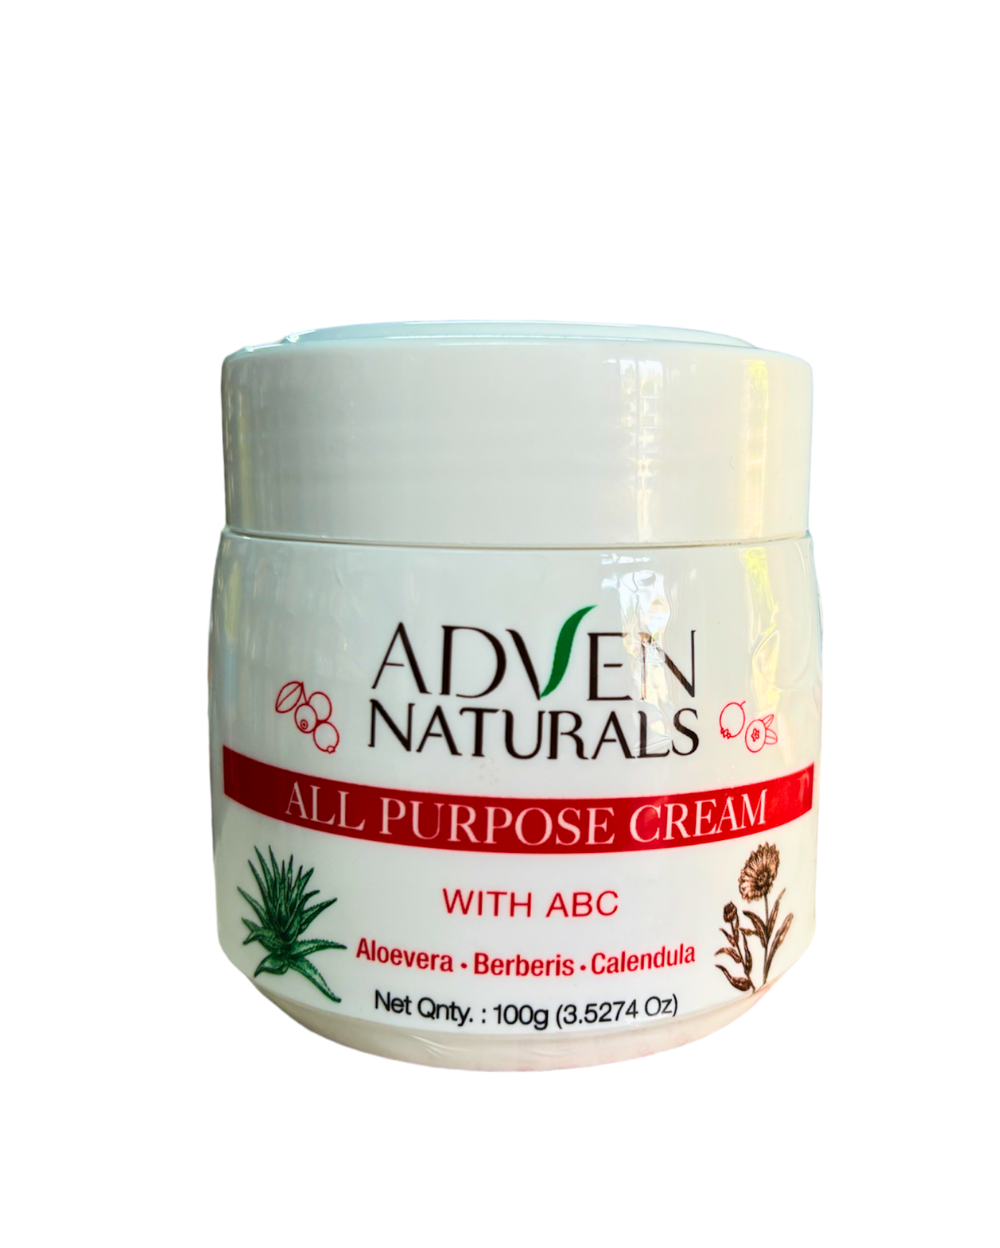 Adven All Purpose Cream with Aloe Vera, Berberis, Calendula (100g)